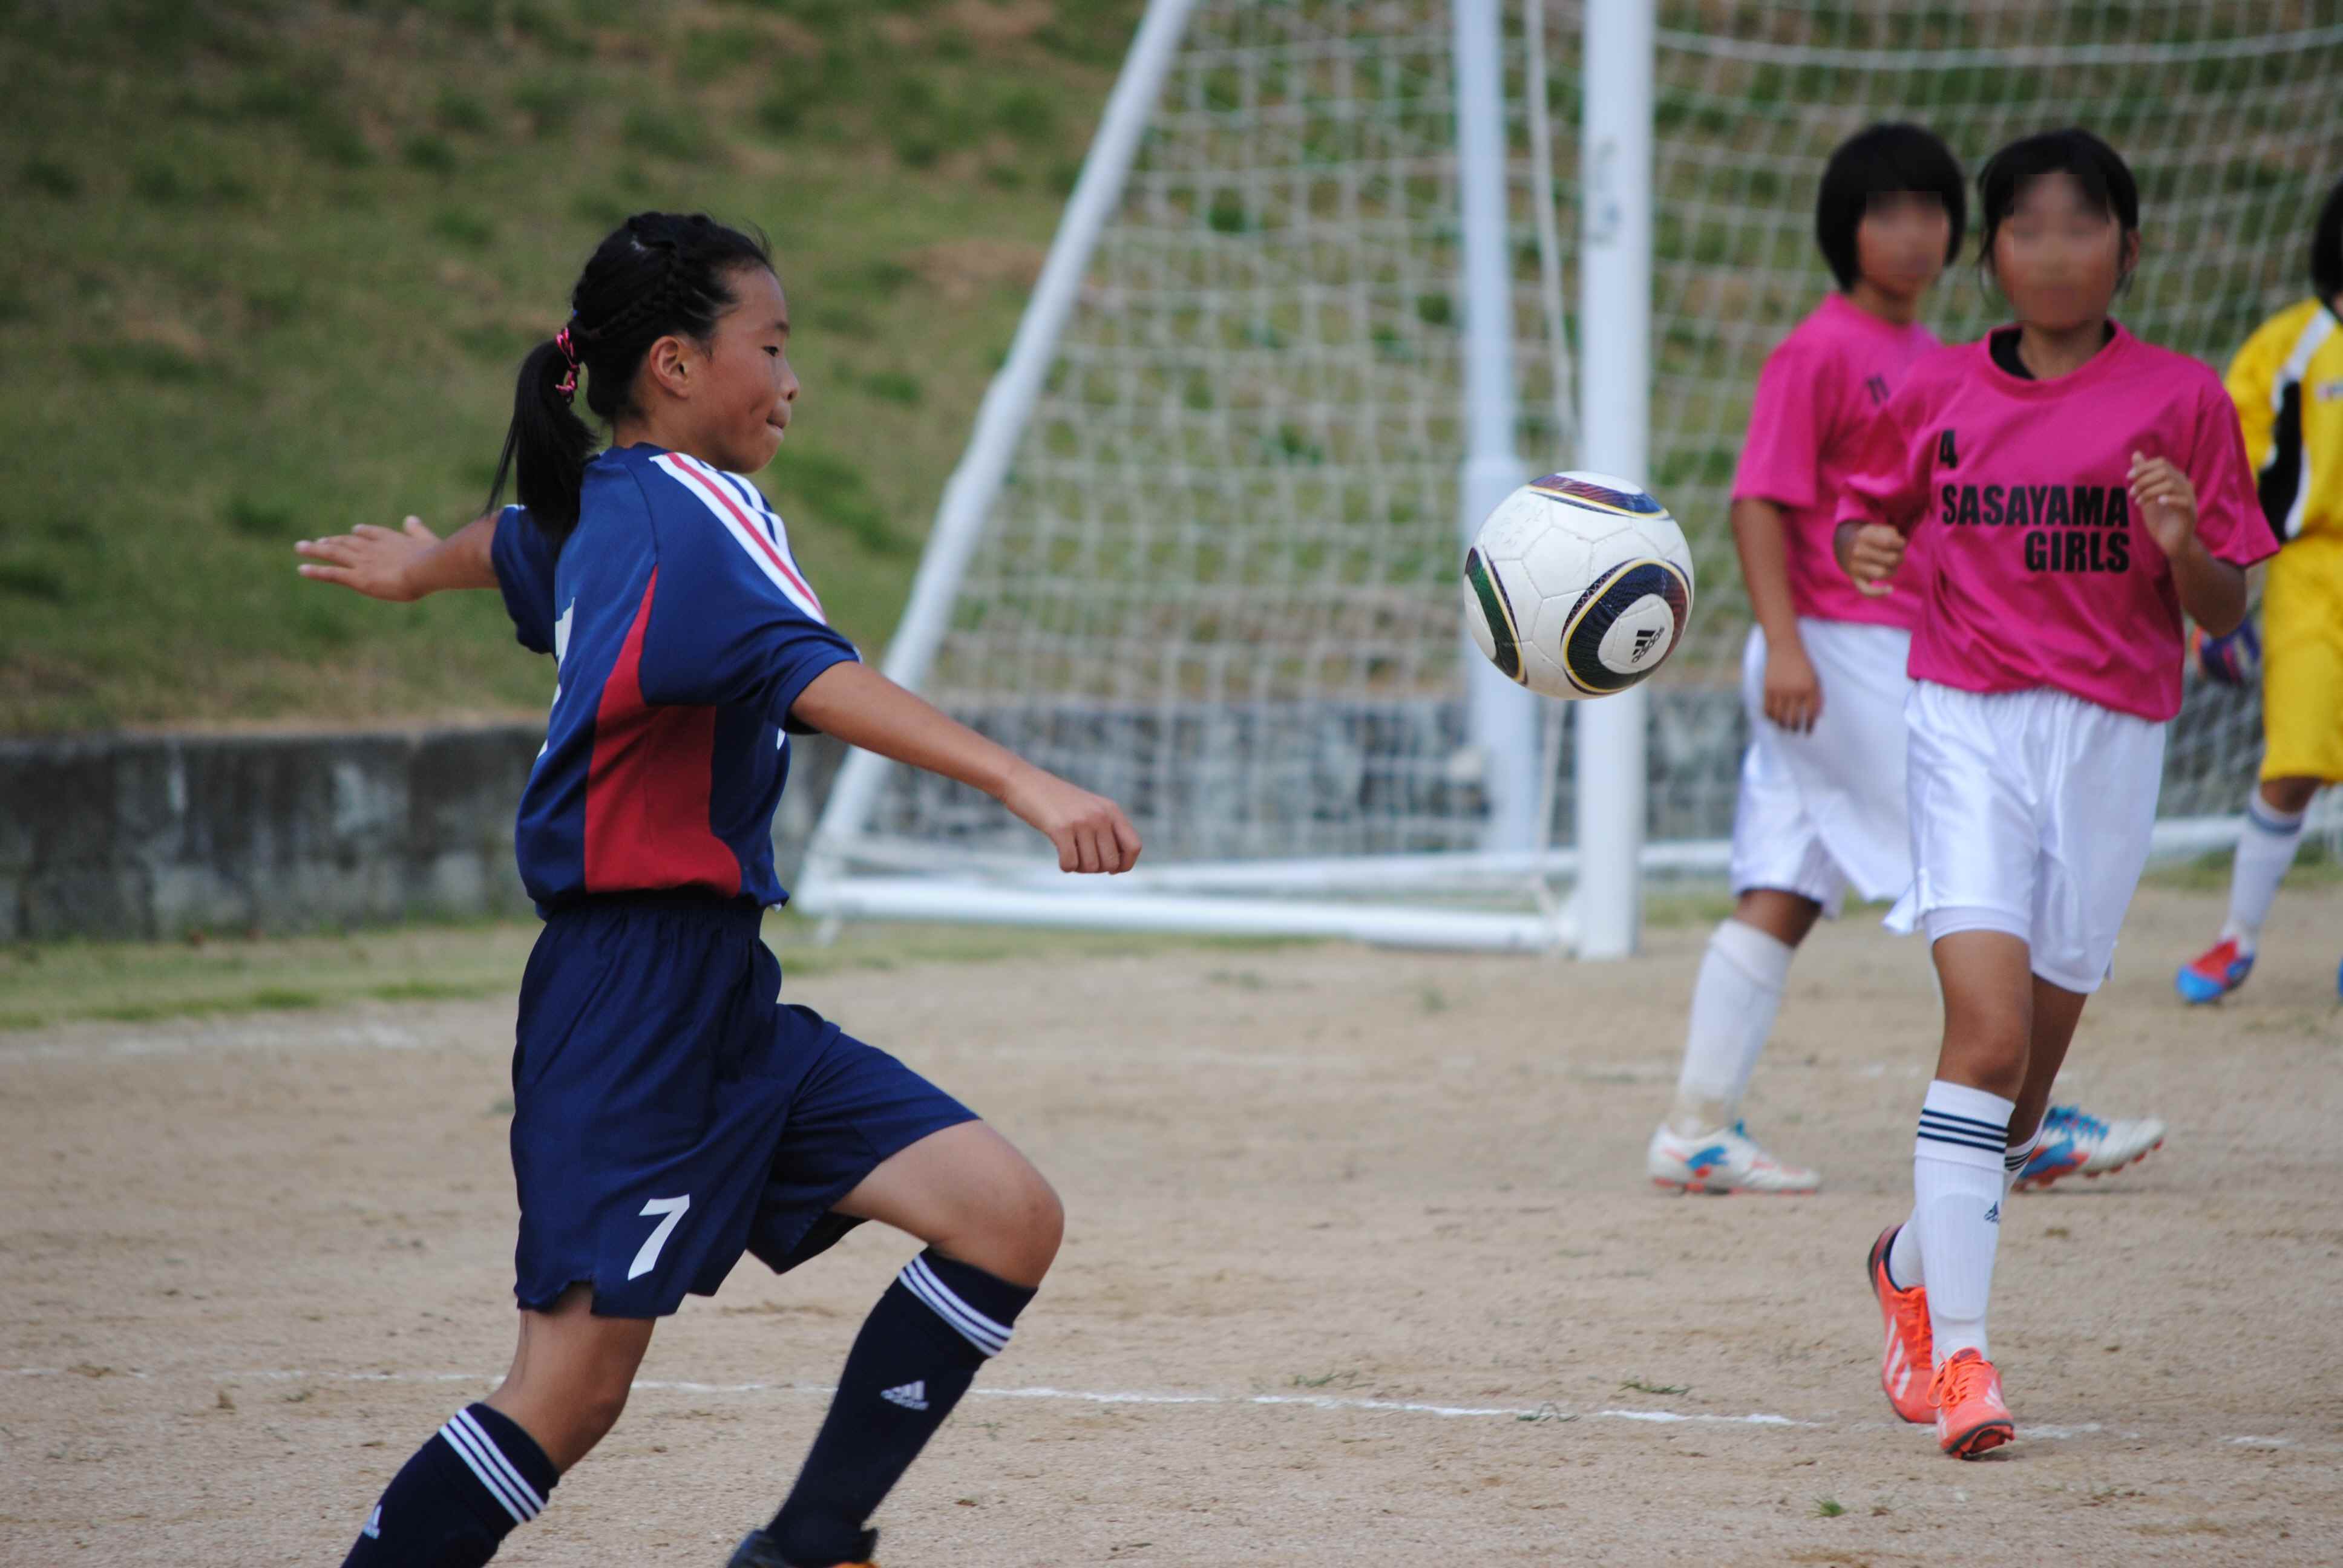 兵庫県小学生女子サッカー大会 予選 姉 ぷち とまと